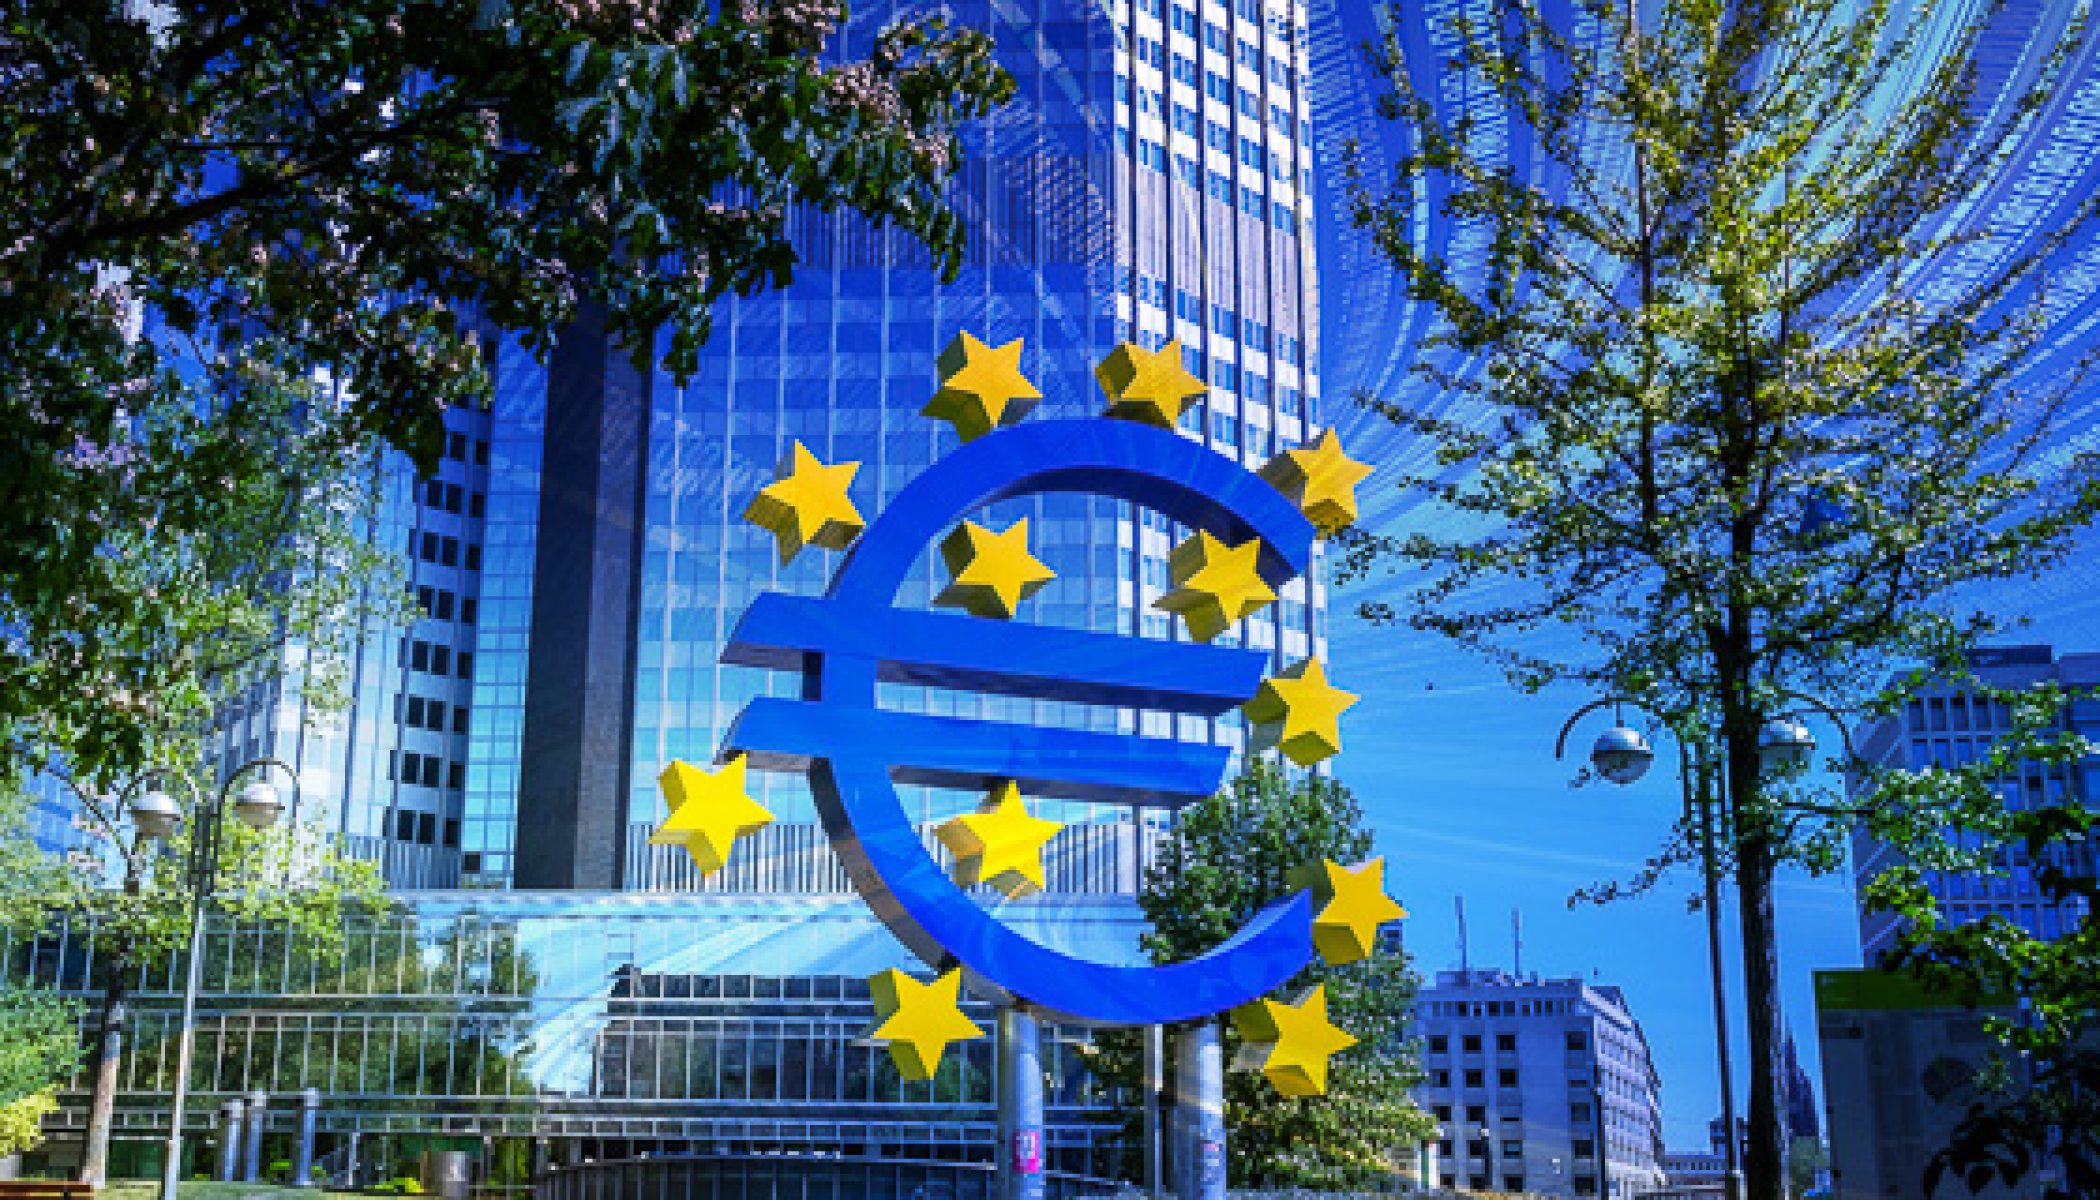 El ente financiero busca una versión digital del euro, en el marco de un auge de las criptomonedas y un incremento de las transacciones virtuales en la eurozona